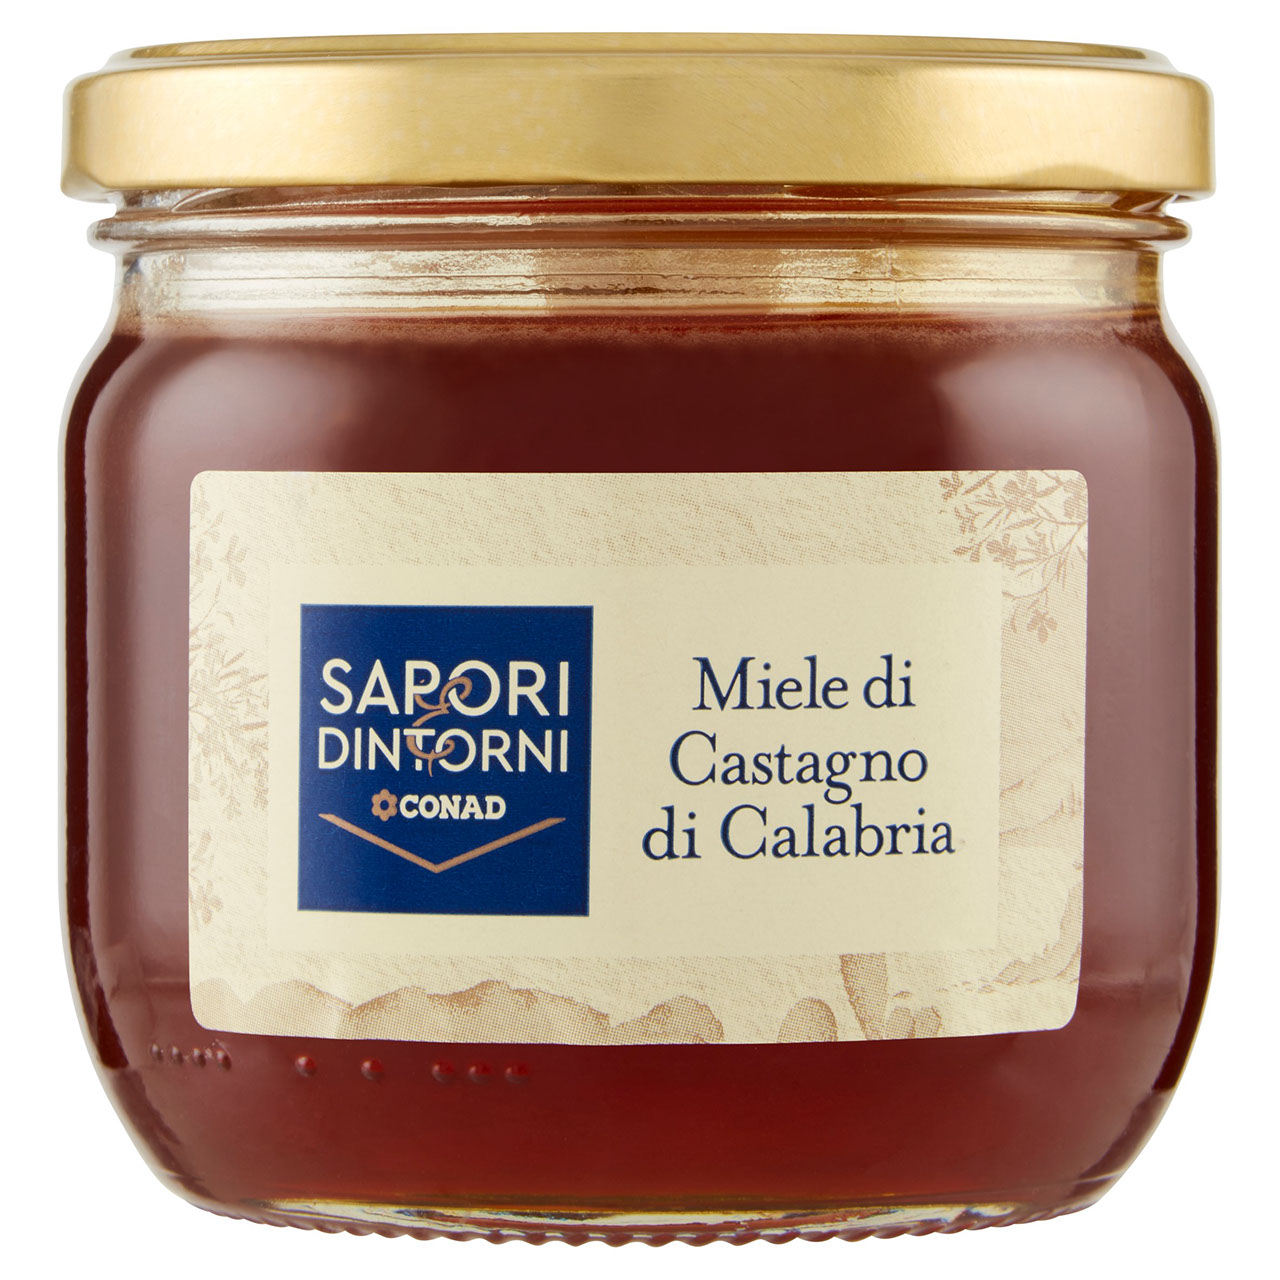 Miele di Castagno di Calabria Sapori e Dintorni